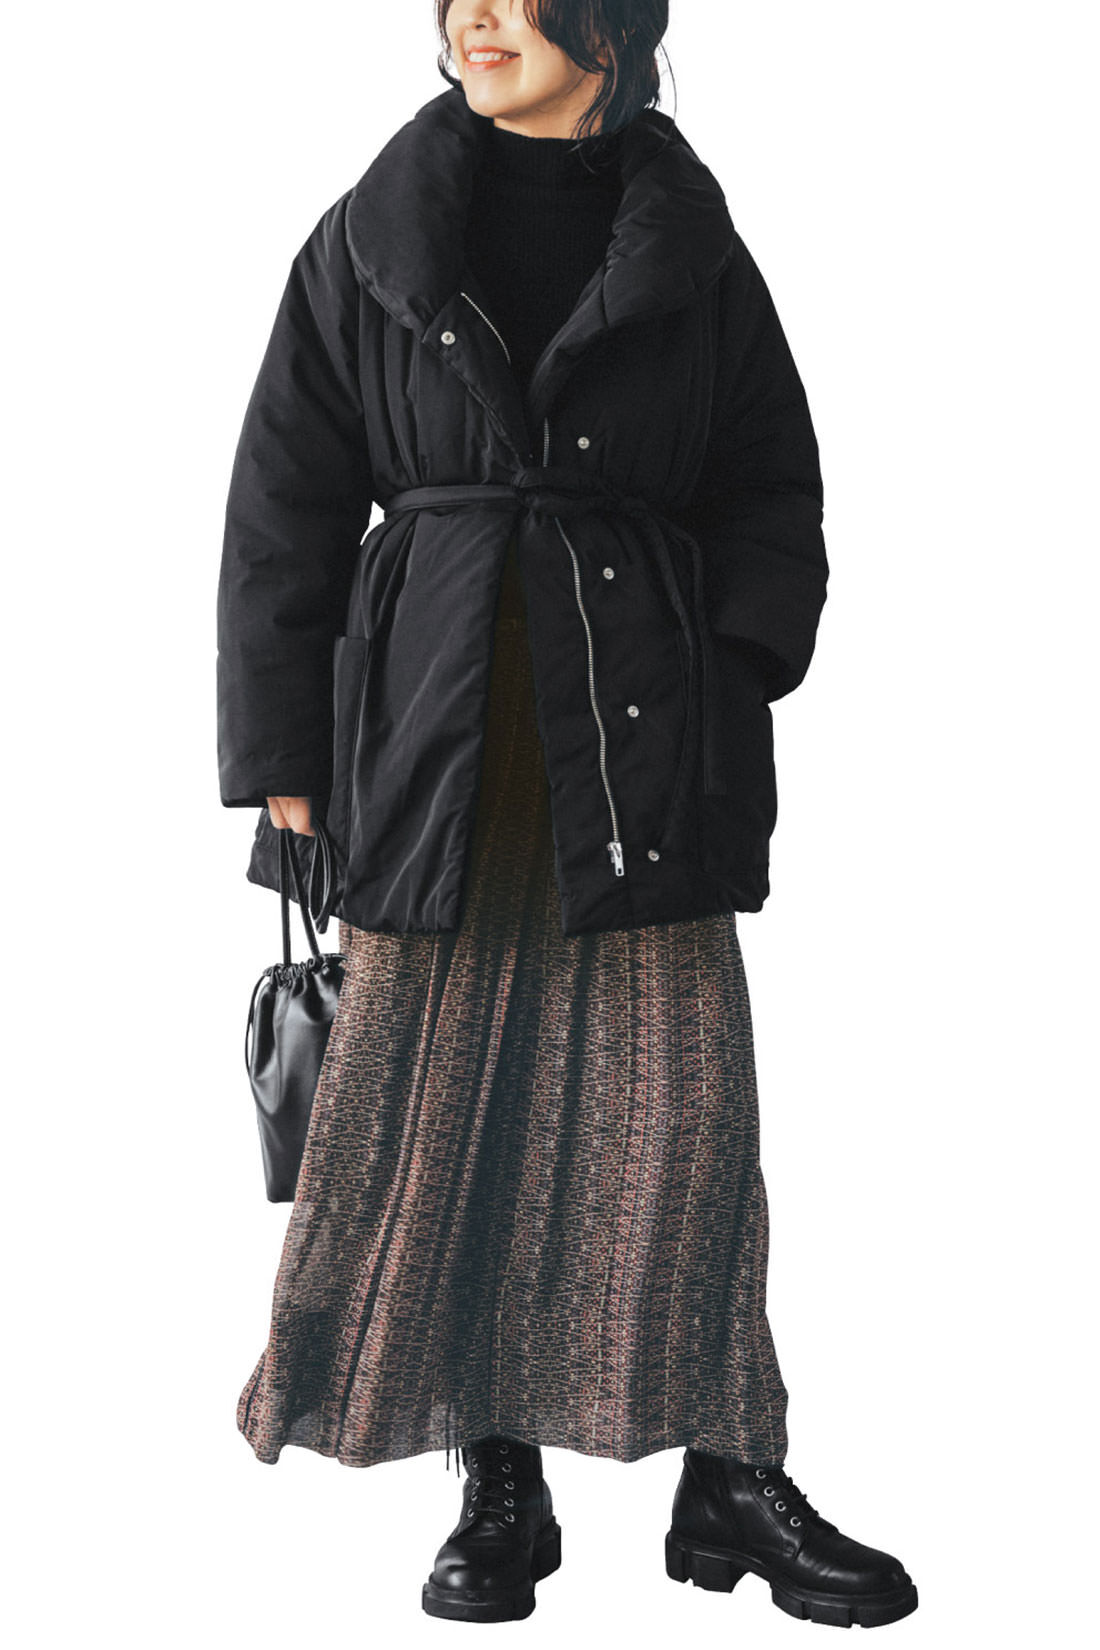 IEDIT[イディット]　福田麻琴さんコラボ　サステナブル素材で未来にやさしい　女っぷりが上がる中わたミディコート〈ブラック〉|ウエストマークのベルトが女っぽい印象に。